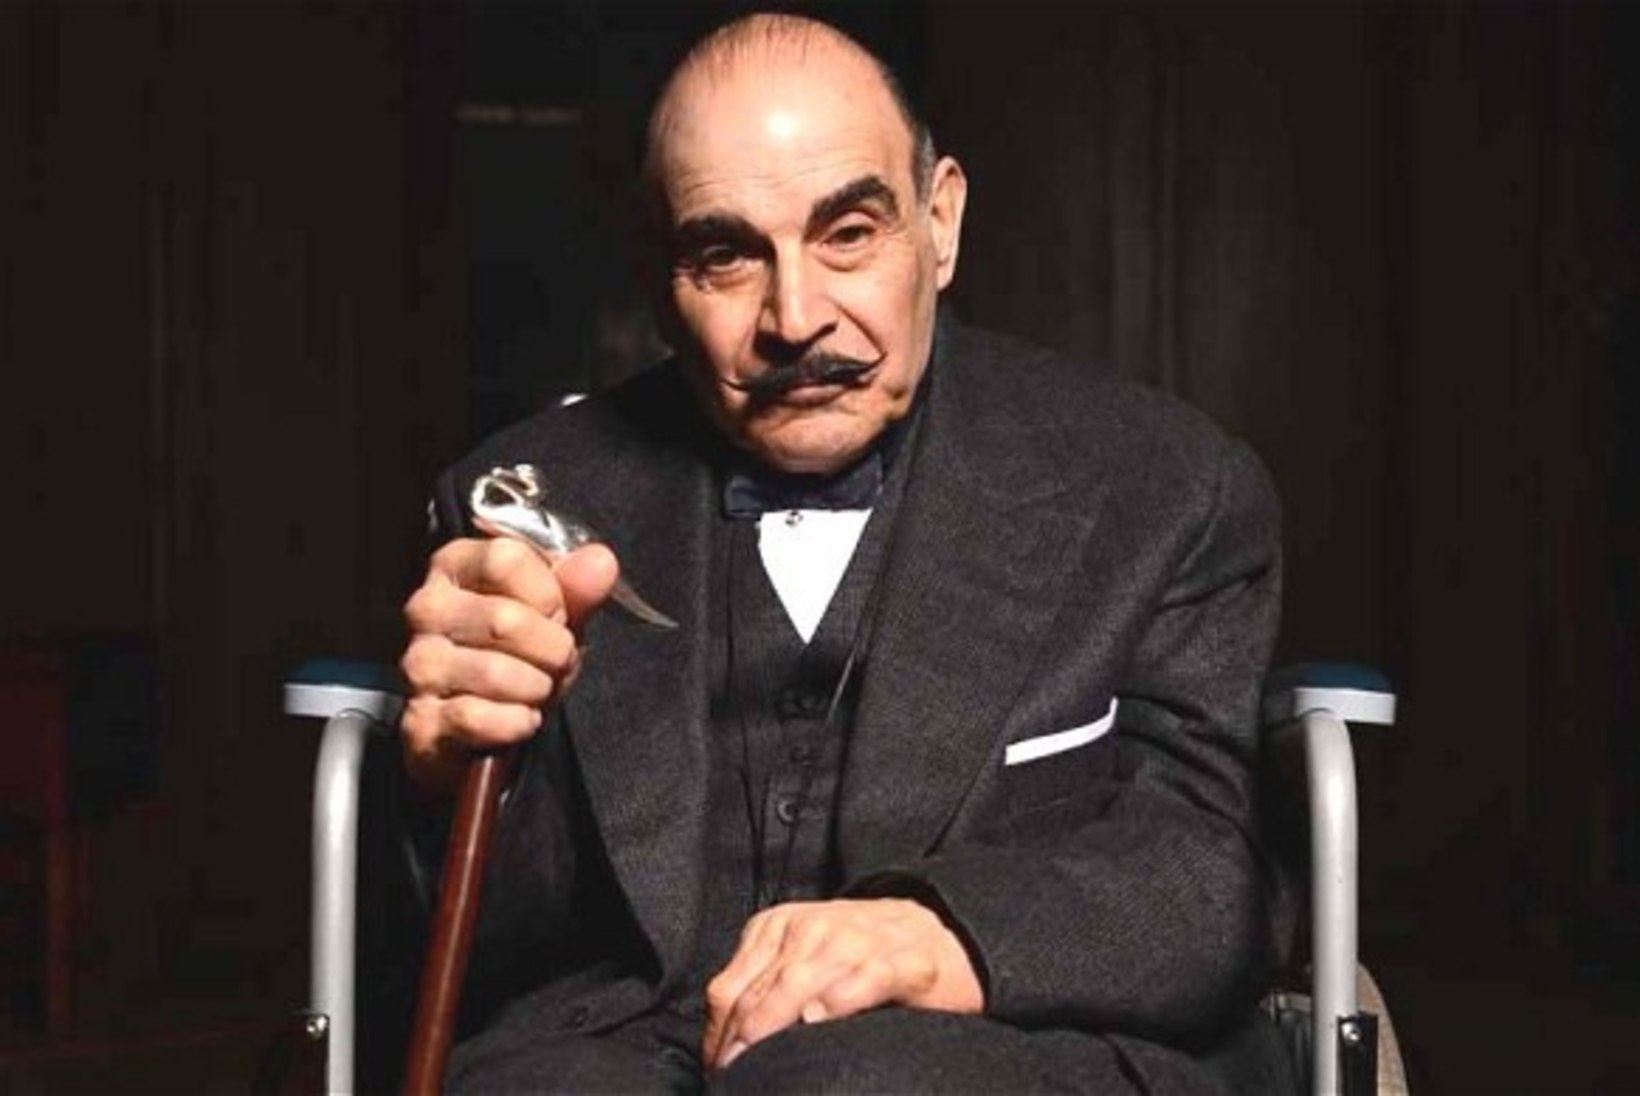 2. MAI: Miks Poirot’ kõhnaks jäi?